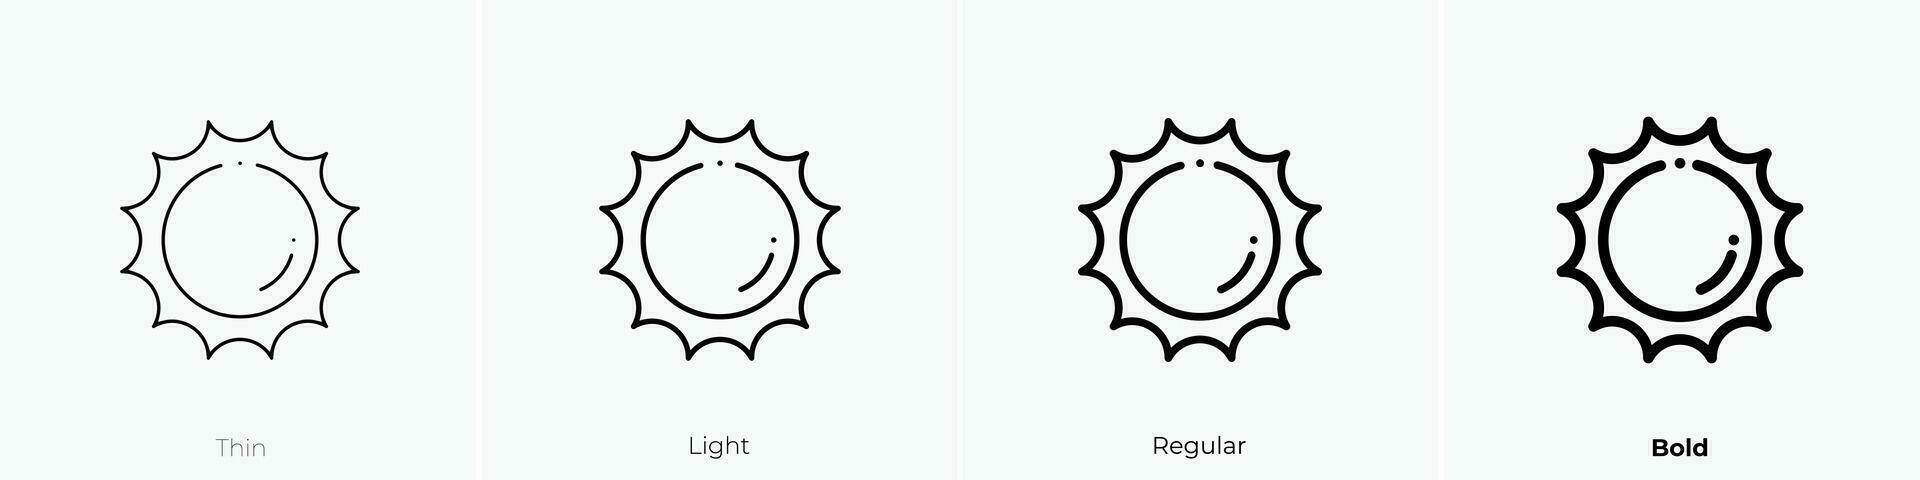 Sonne Symbol. dünn, Licht, regulär und Fett gedruckt Stil Design isoliert auf Weiß Hintergrund vektor